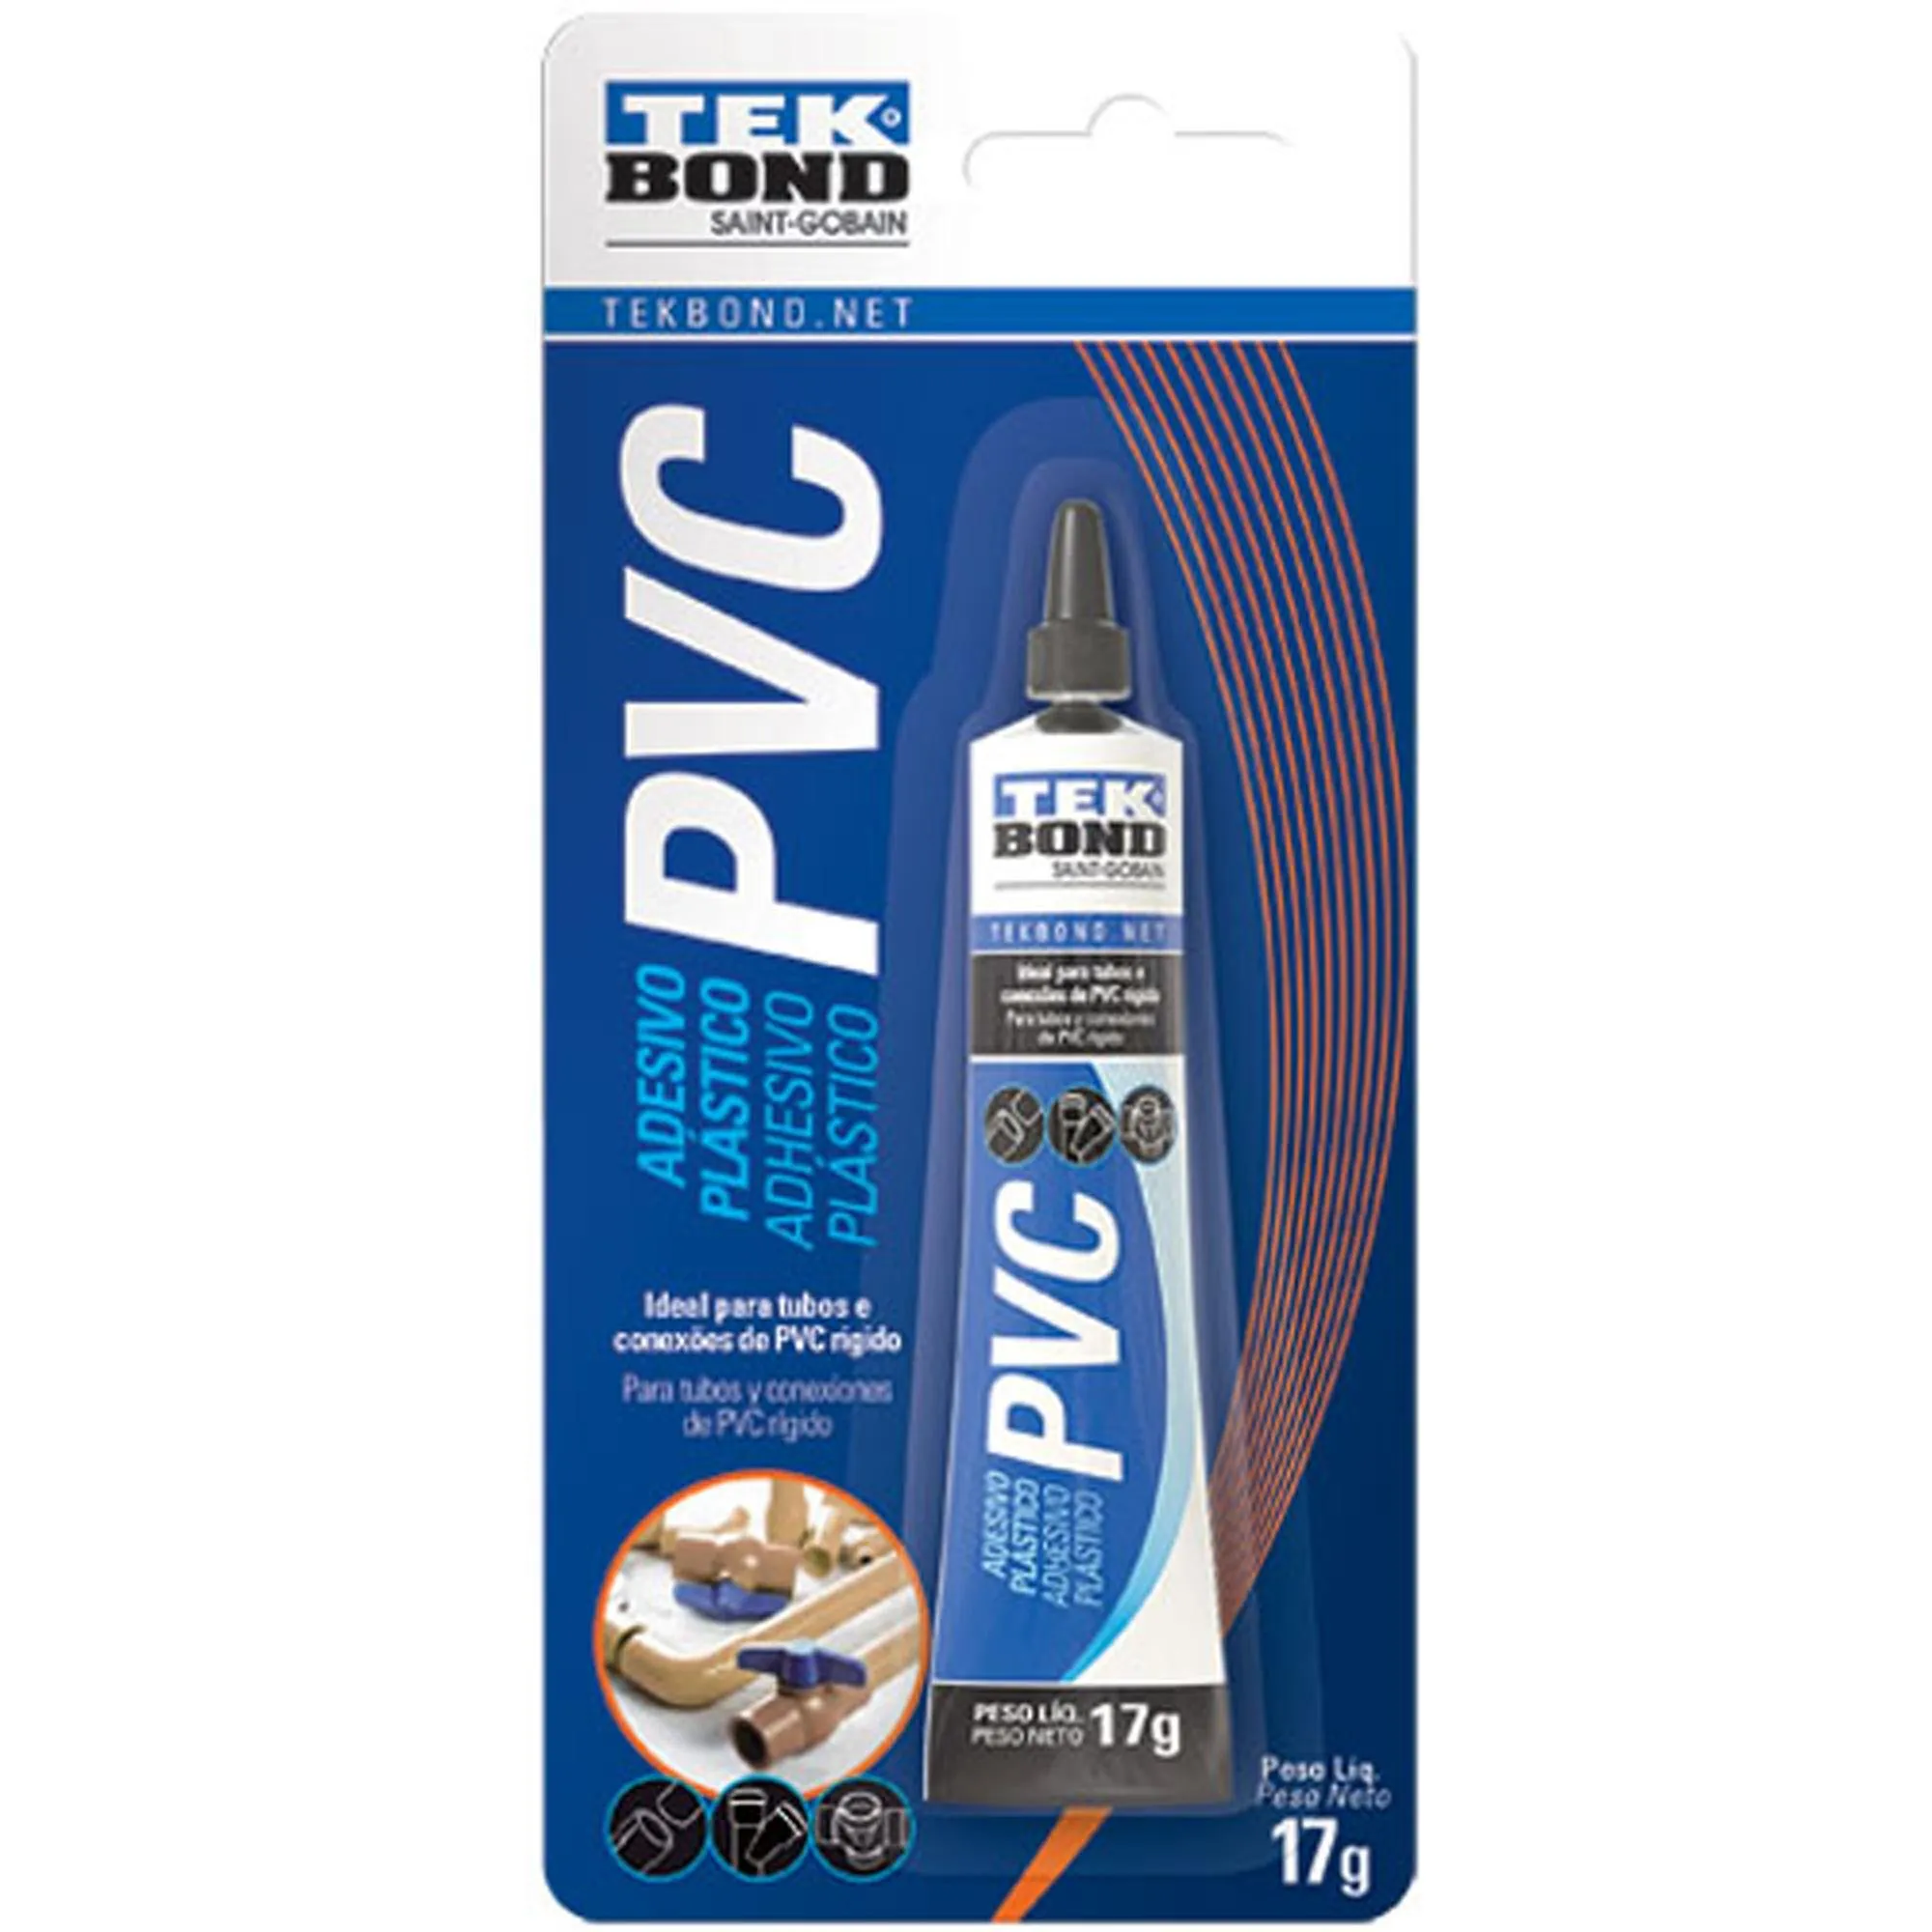 Adesivo Plástico Para Tubos de PVC 17g Blister Tekbond - Caixa Fechada por 71,99 à vista no boleto/pix ou parcele em até 2x sem juros. Compre na loja Mundomax!